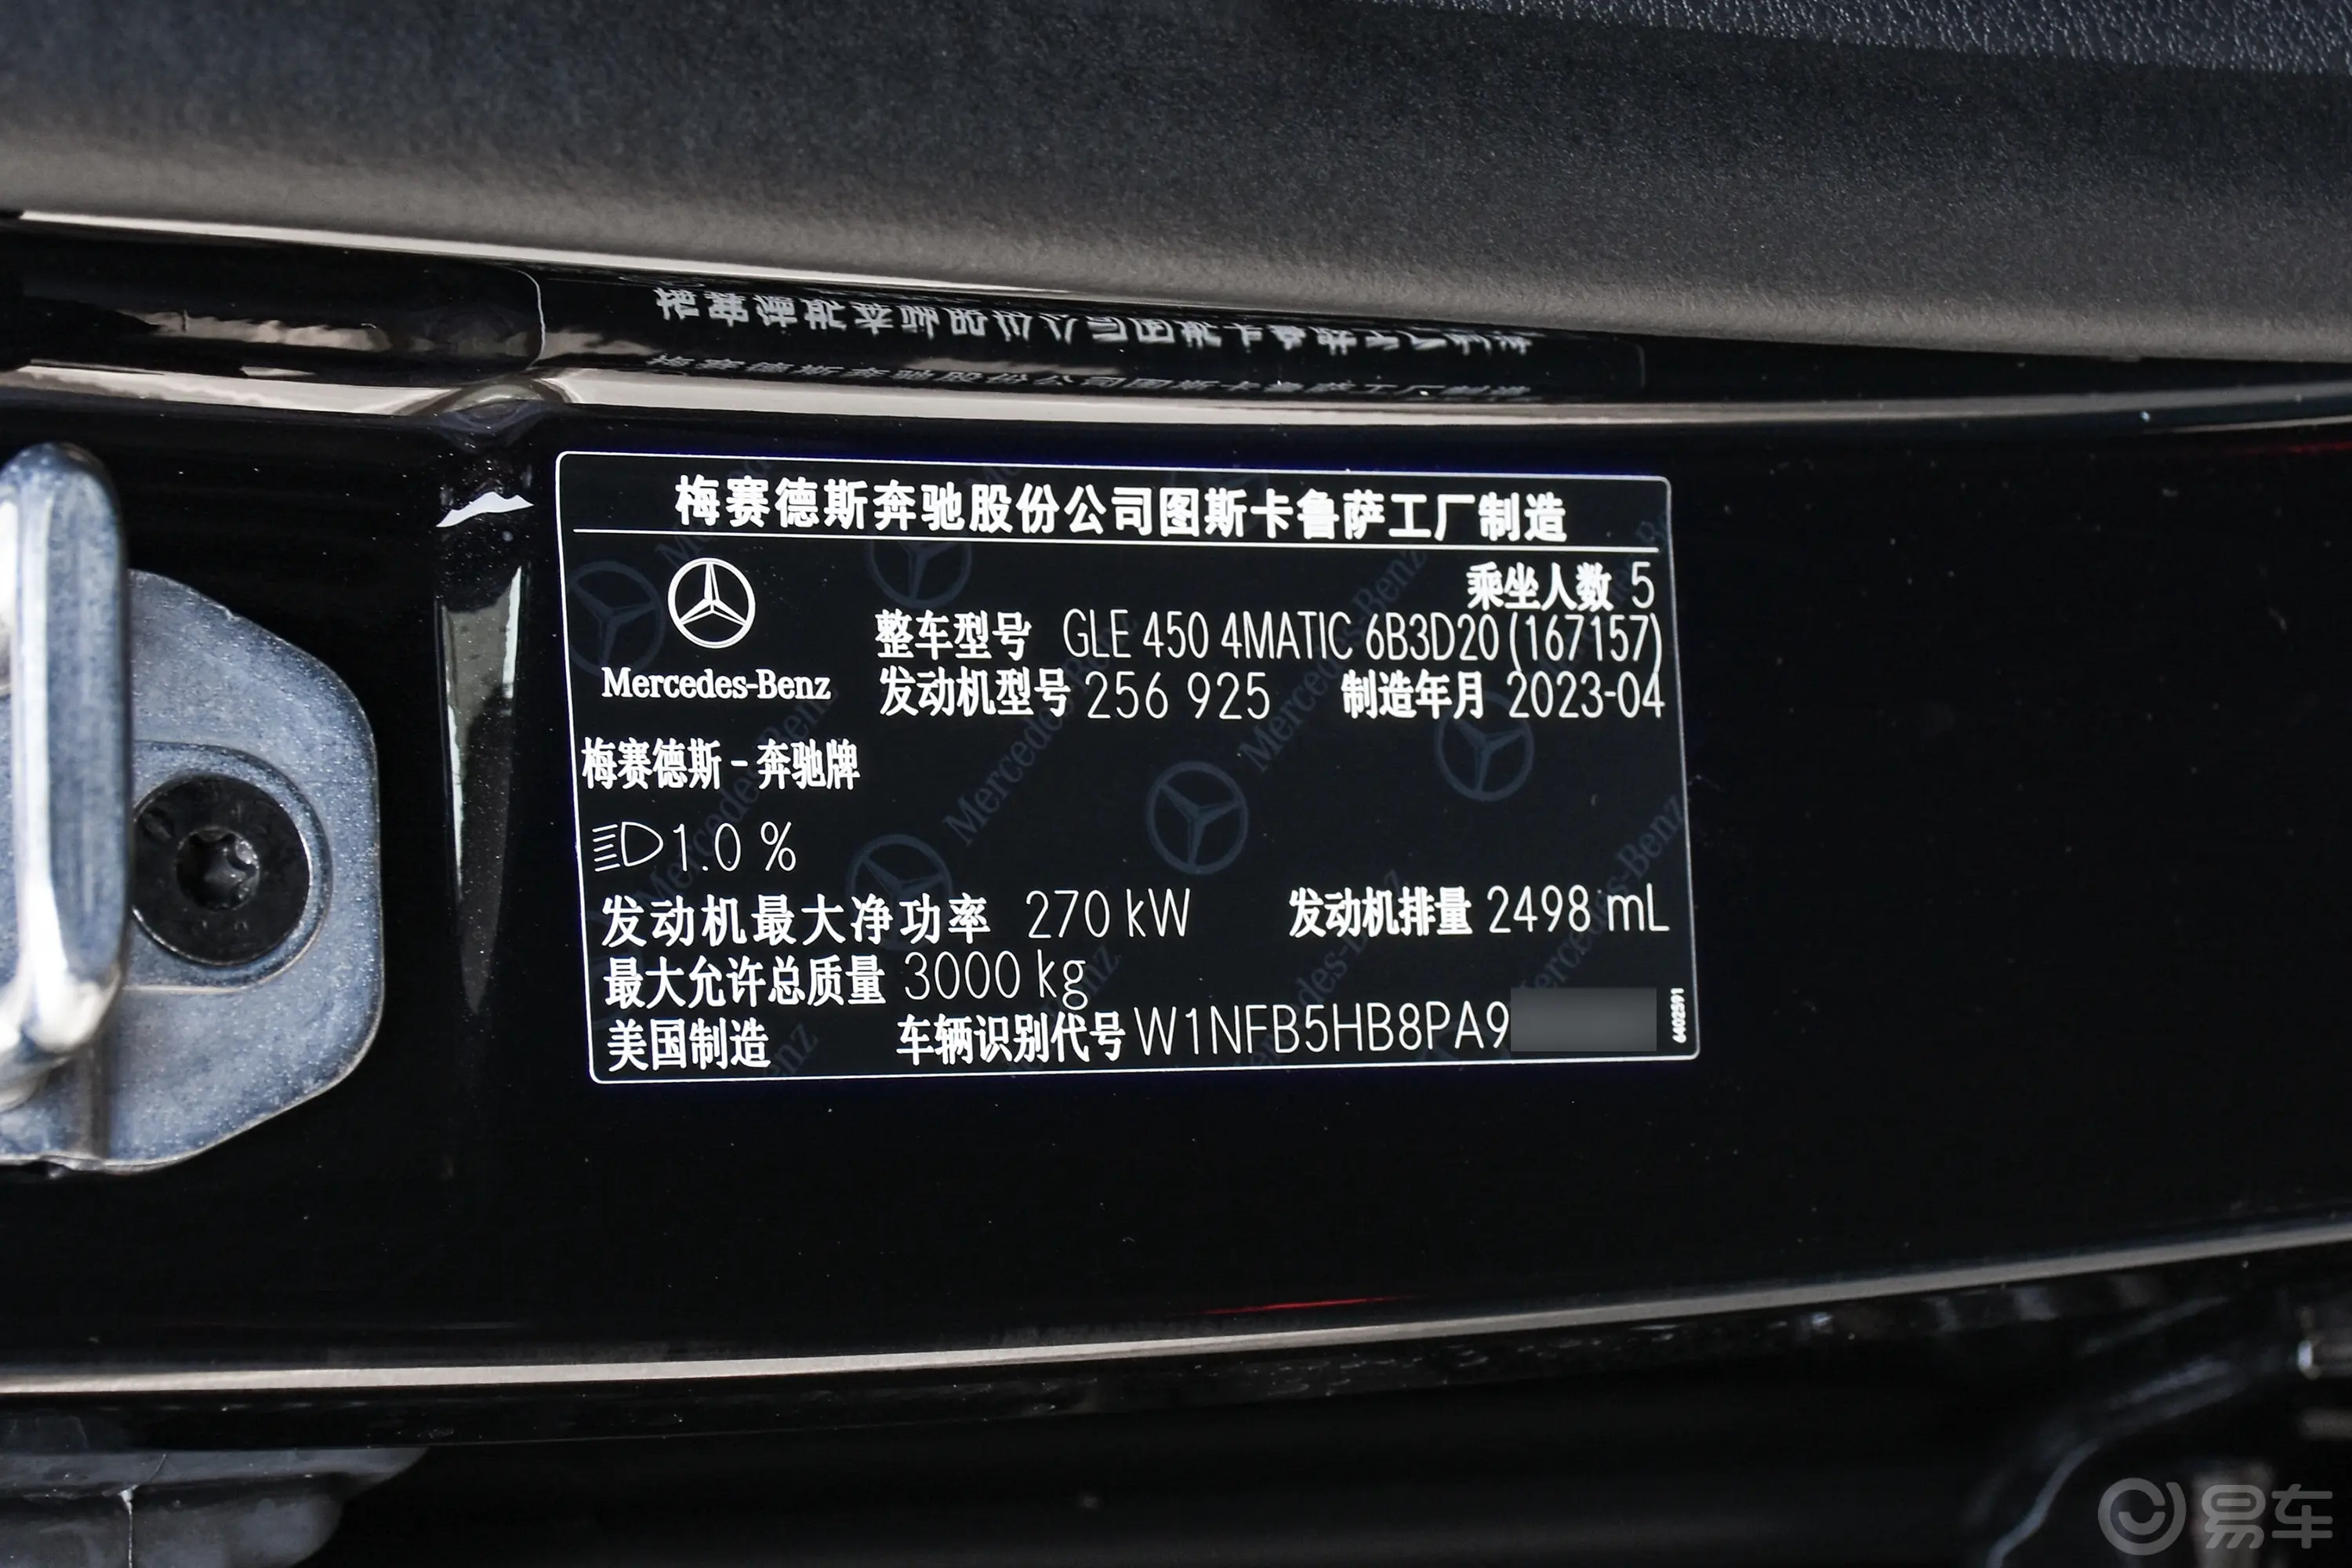 奔驰GLEGLE 450 4MATIC 动感型车辆信息铭牌